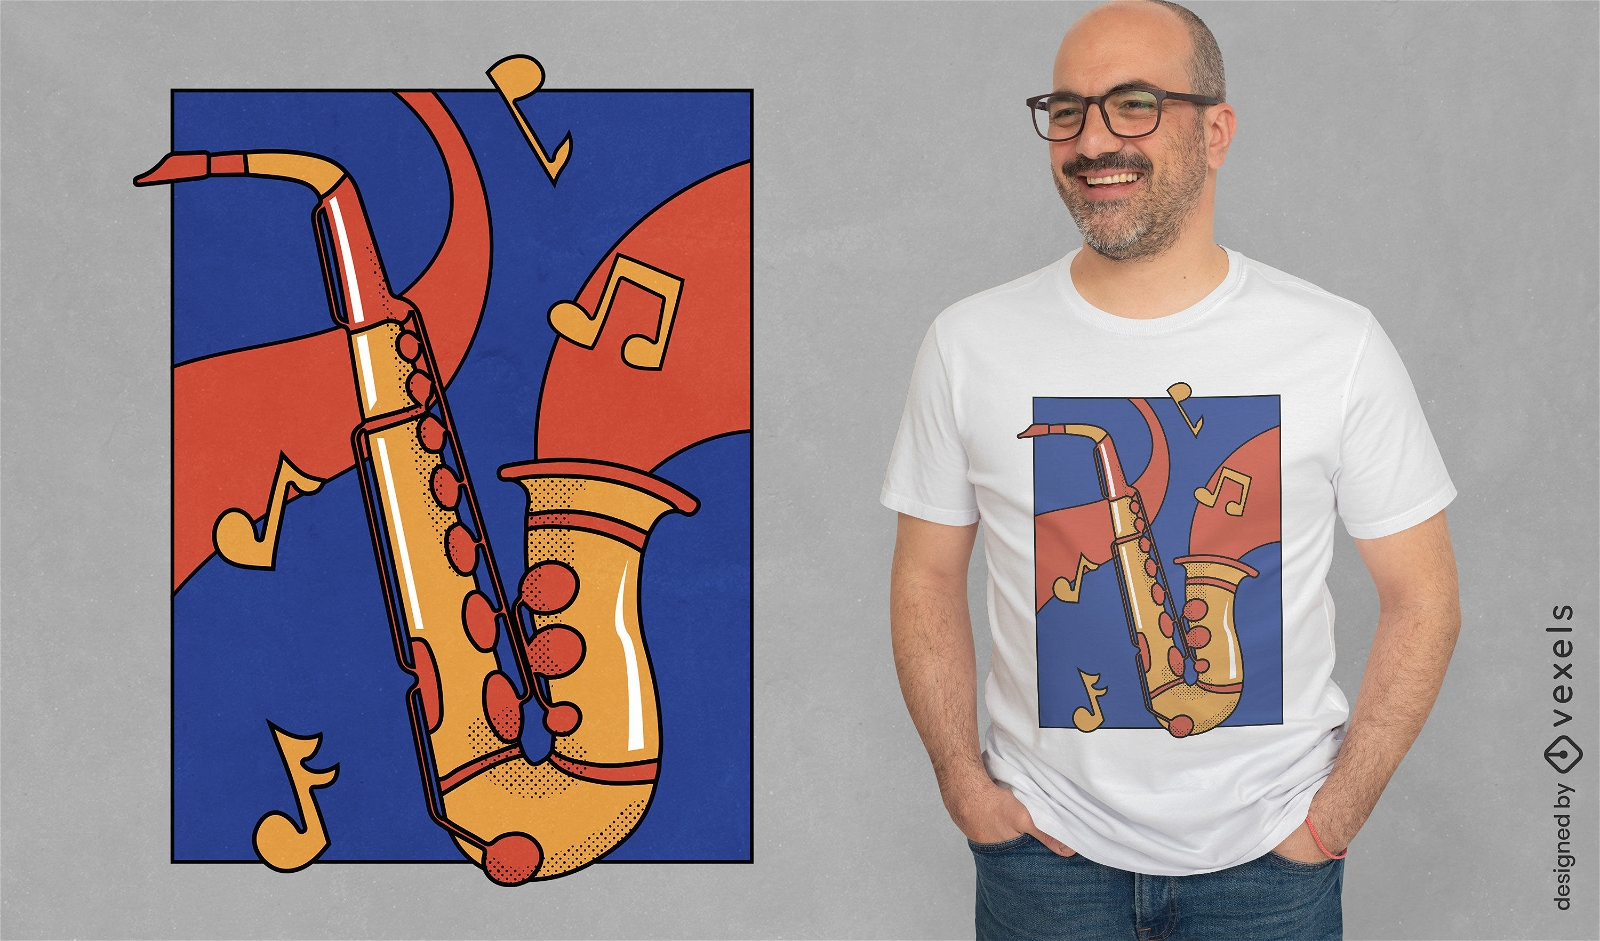 Dise?o de camiseta de instrumento musical de saxof?n.